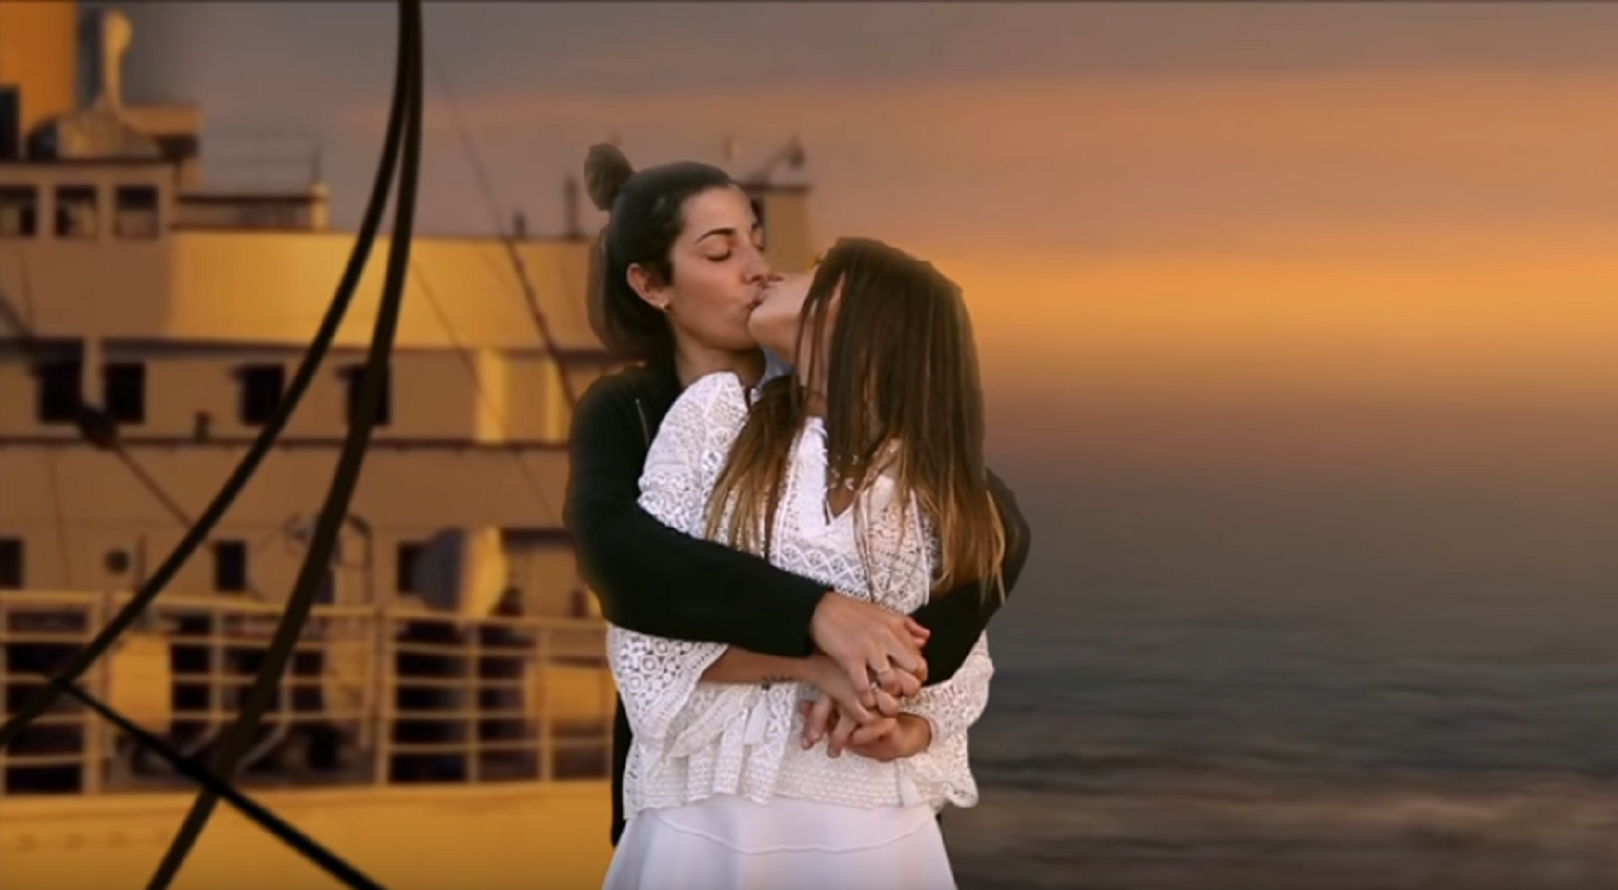 Els apassionats petons ‘de pel·lícula’ de la catalana Dulceida i la seva dona